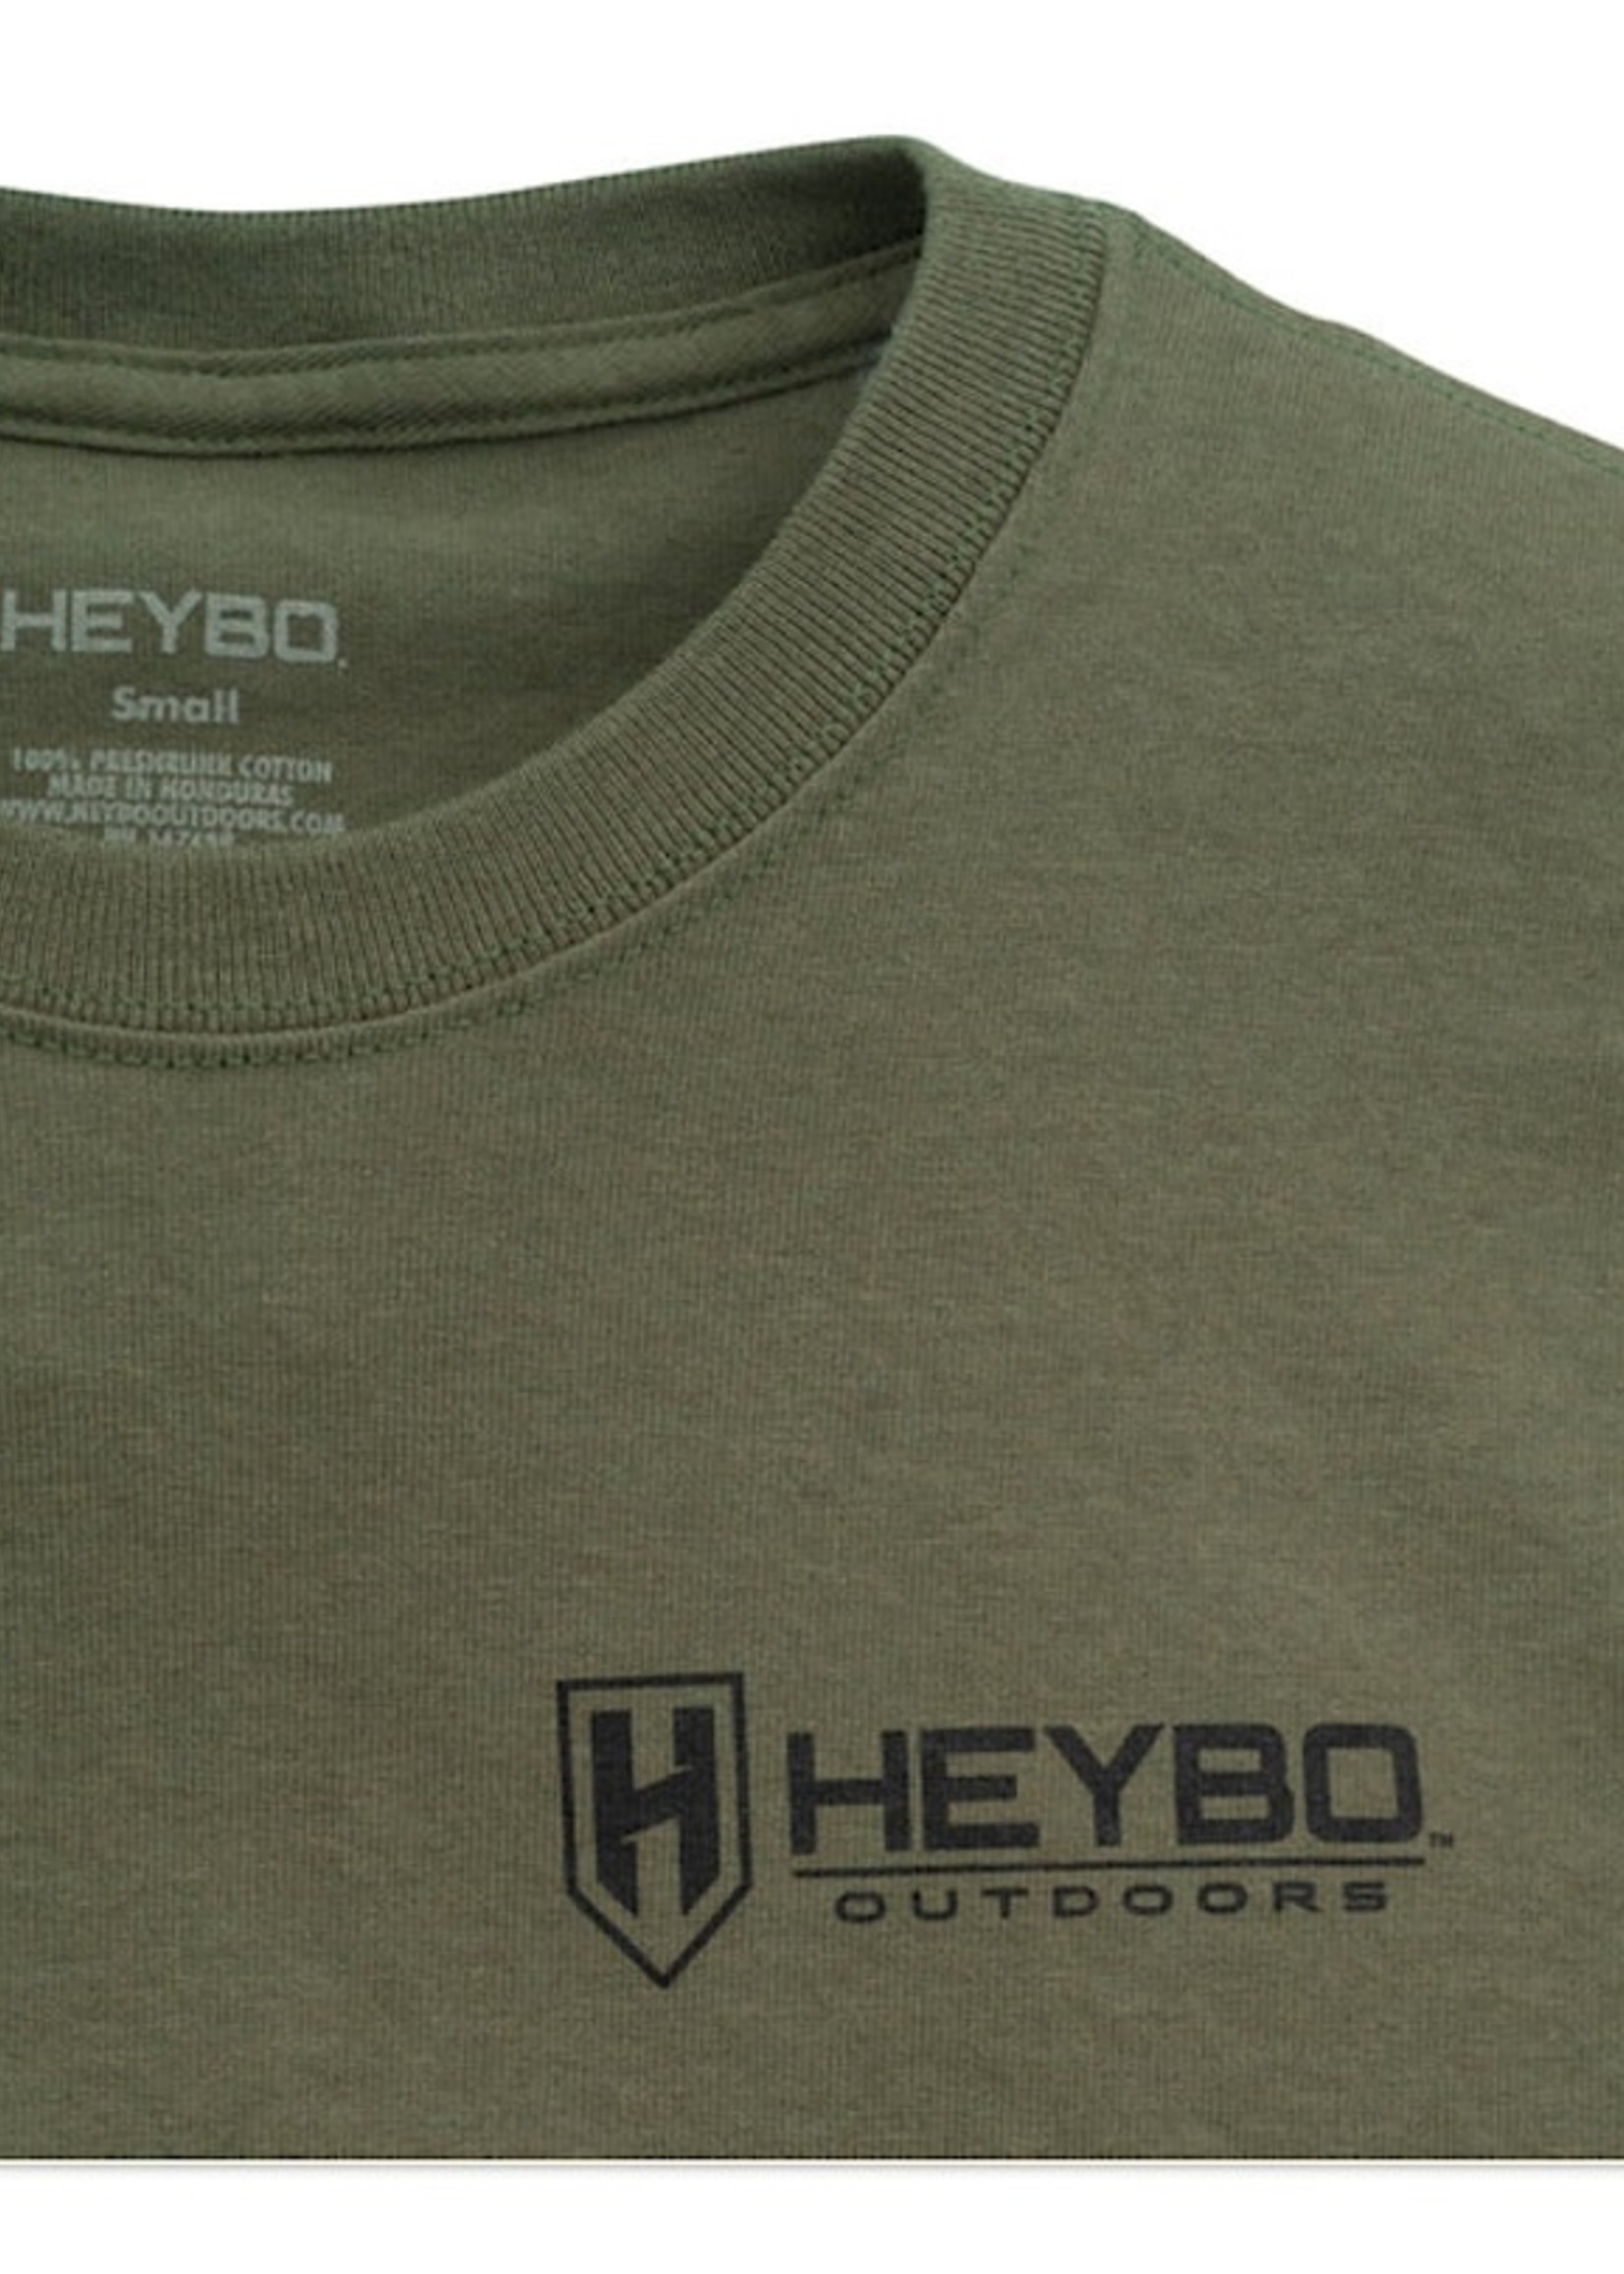 HEYBO Outdoors Heybo Bass & Crayfish